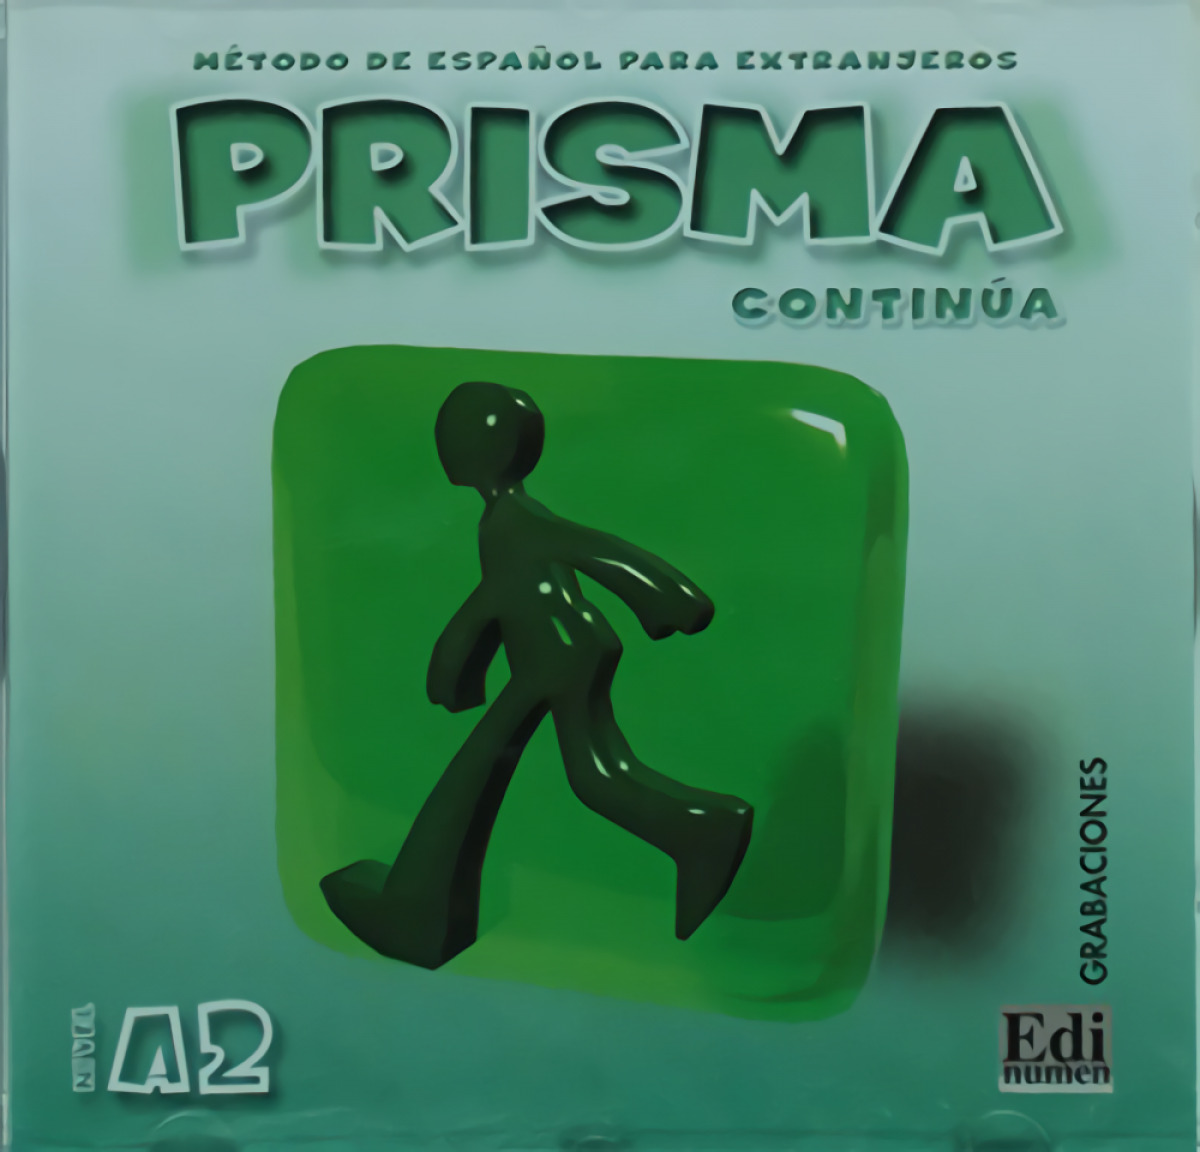 Prisma, método de español, nivel A2, continúa. Grabaciones - Gelabert Navarro, María José